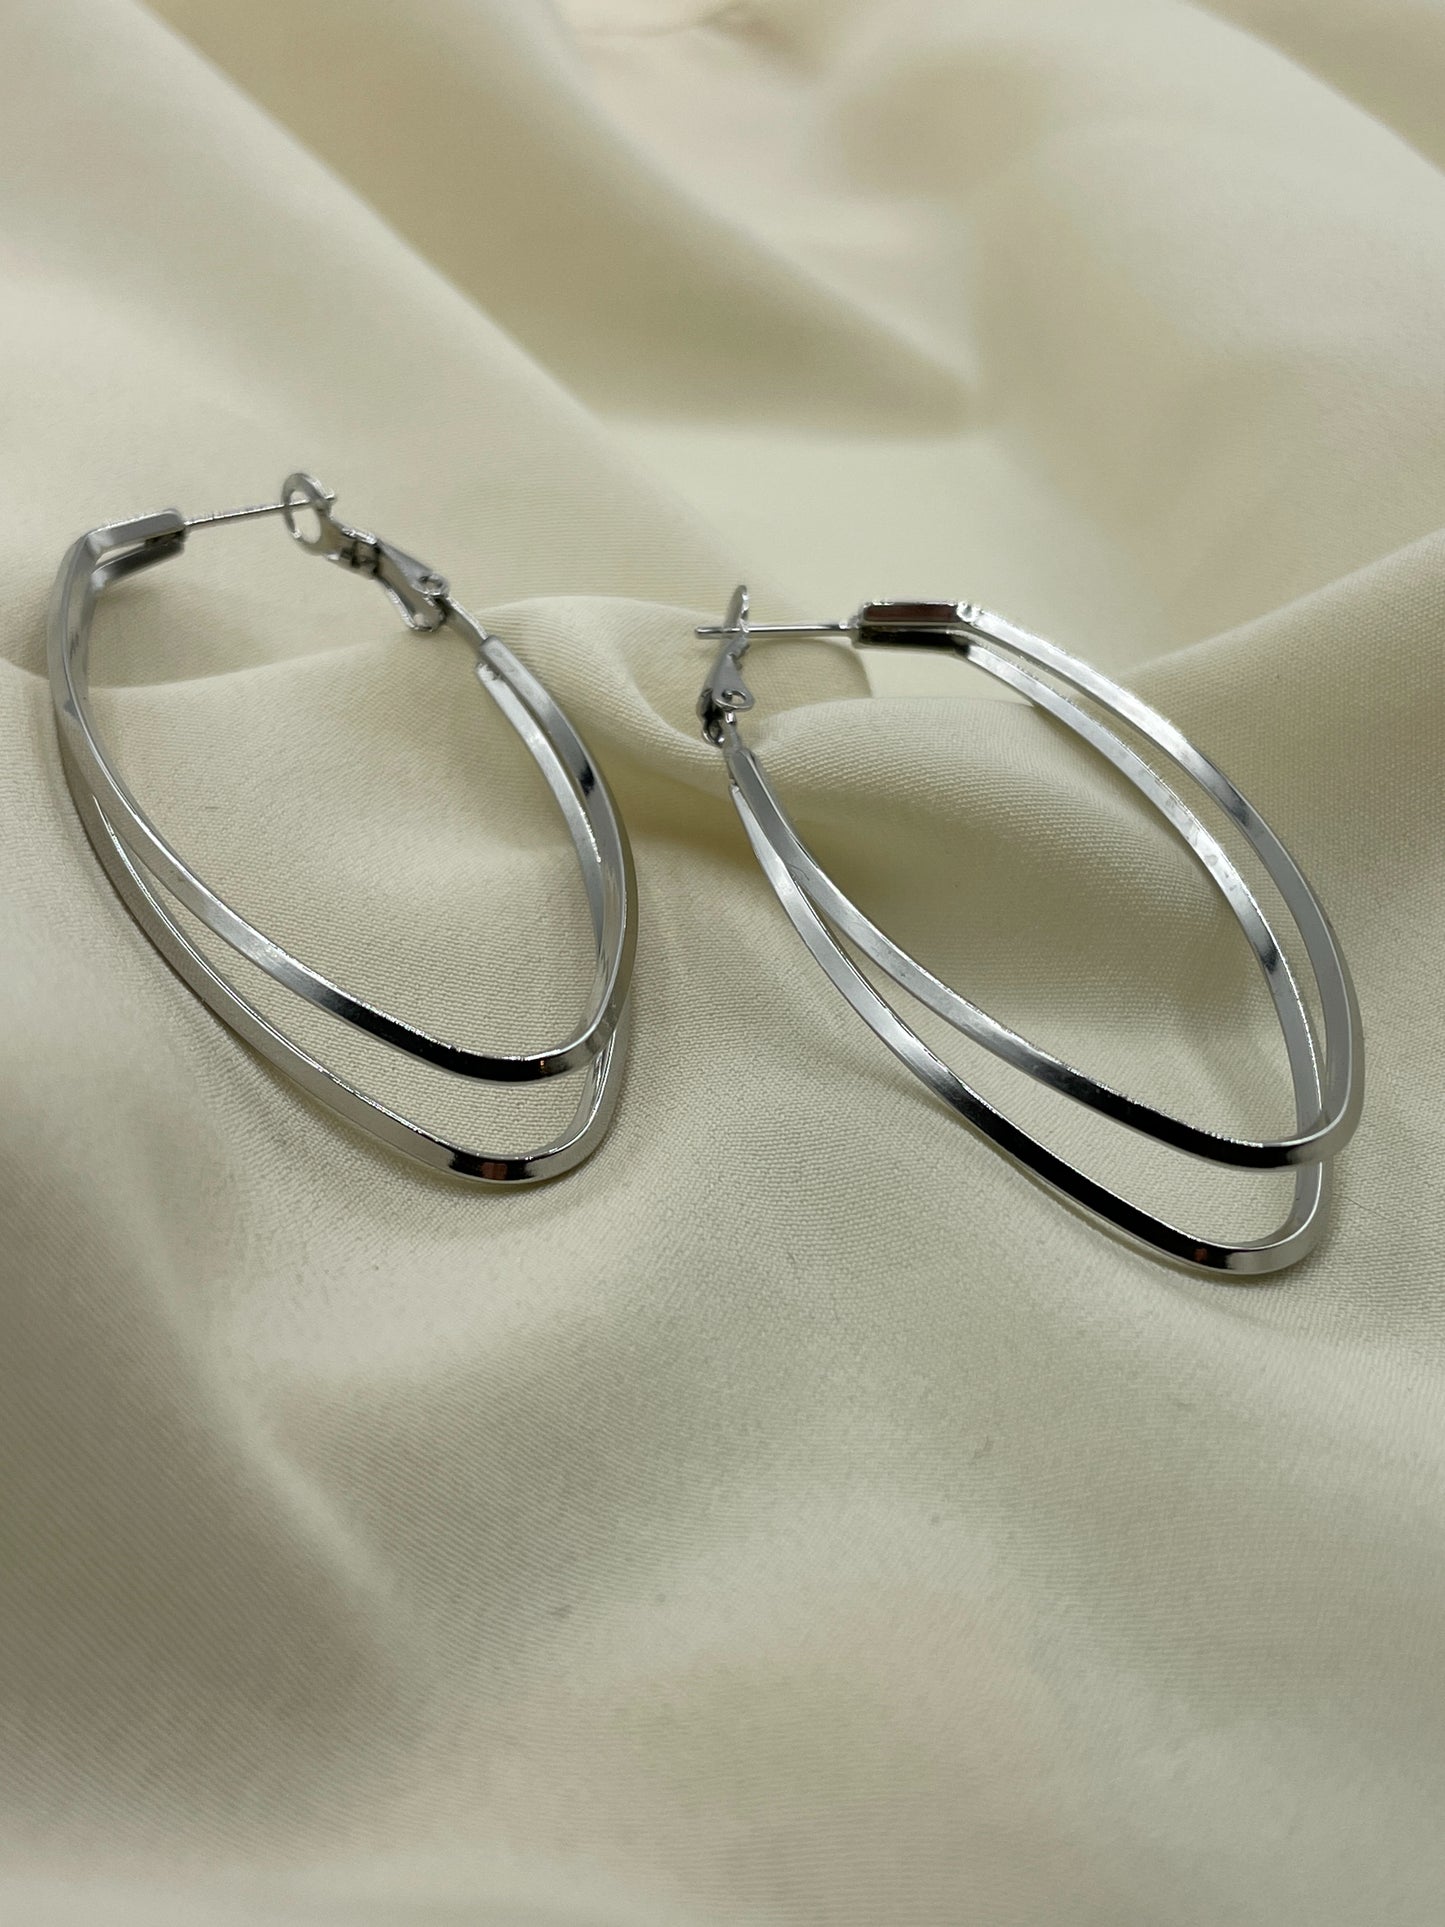 Double Oval Hoops Earrings Silver